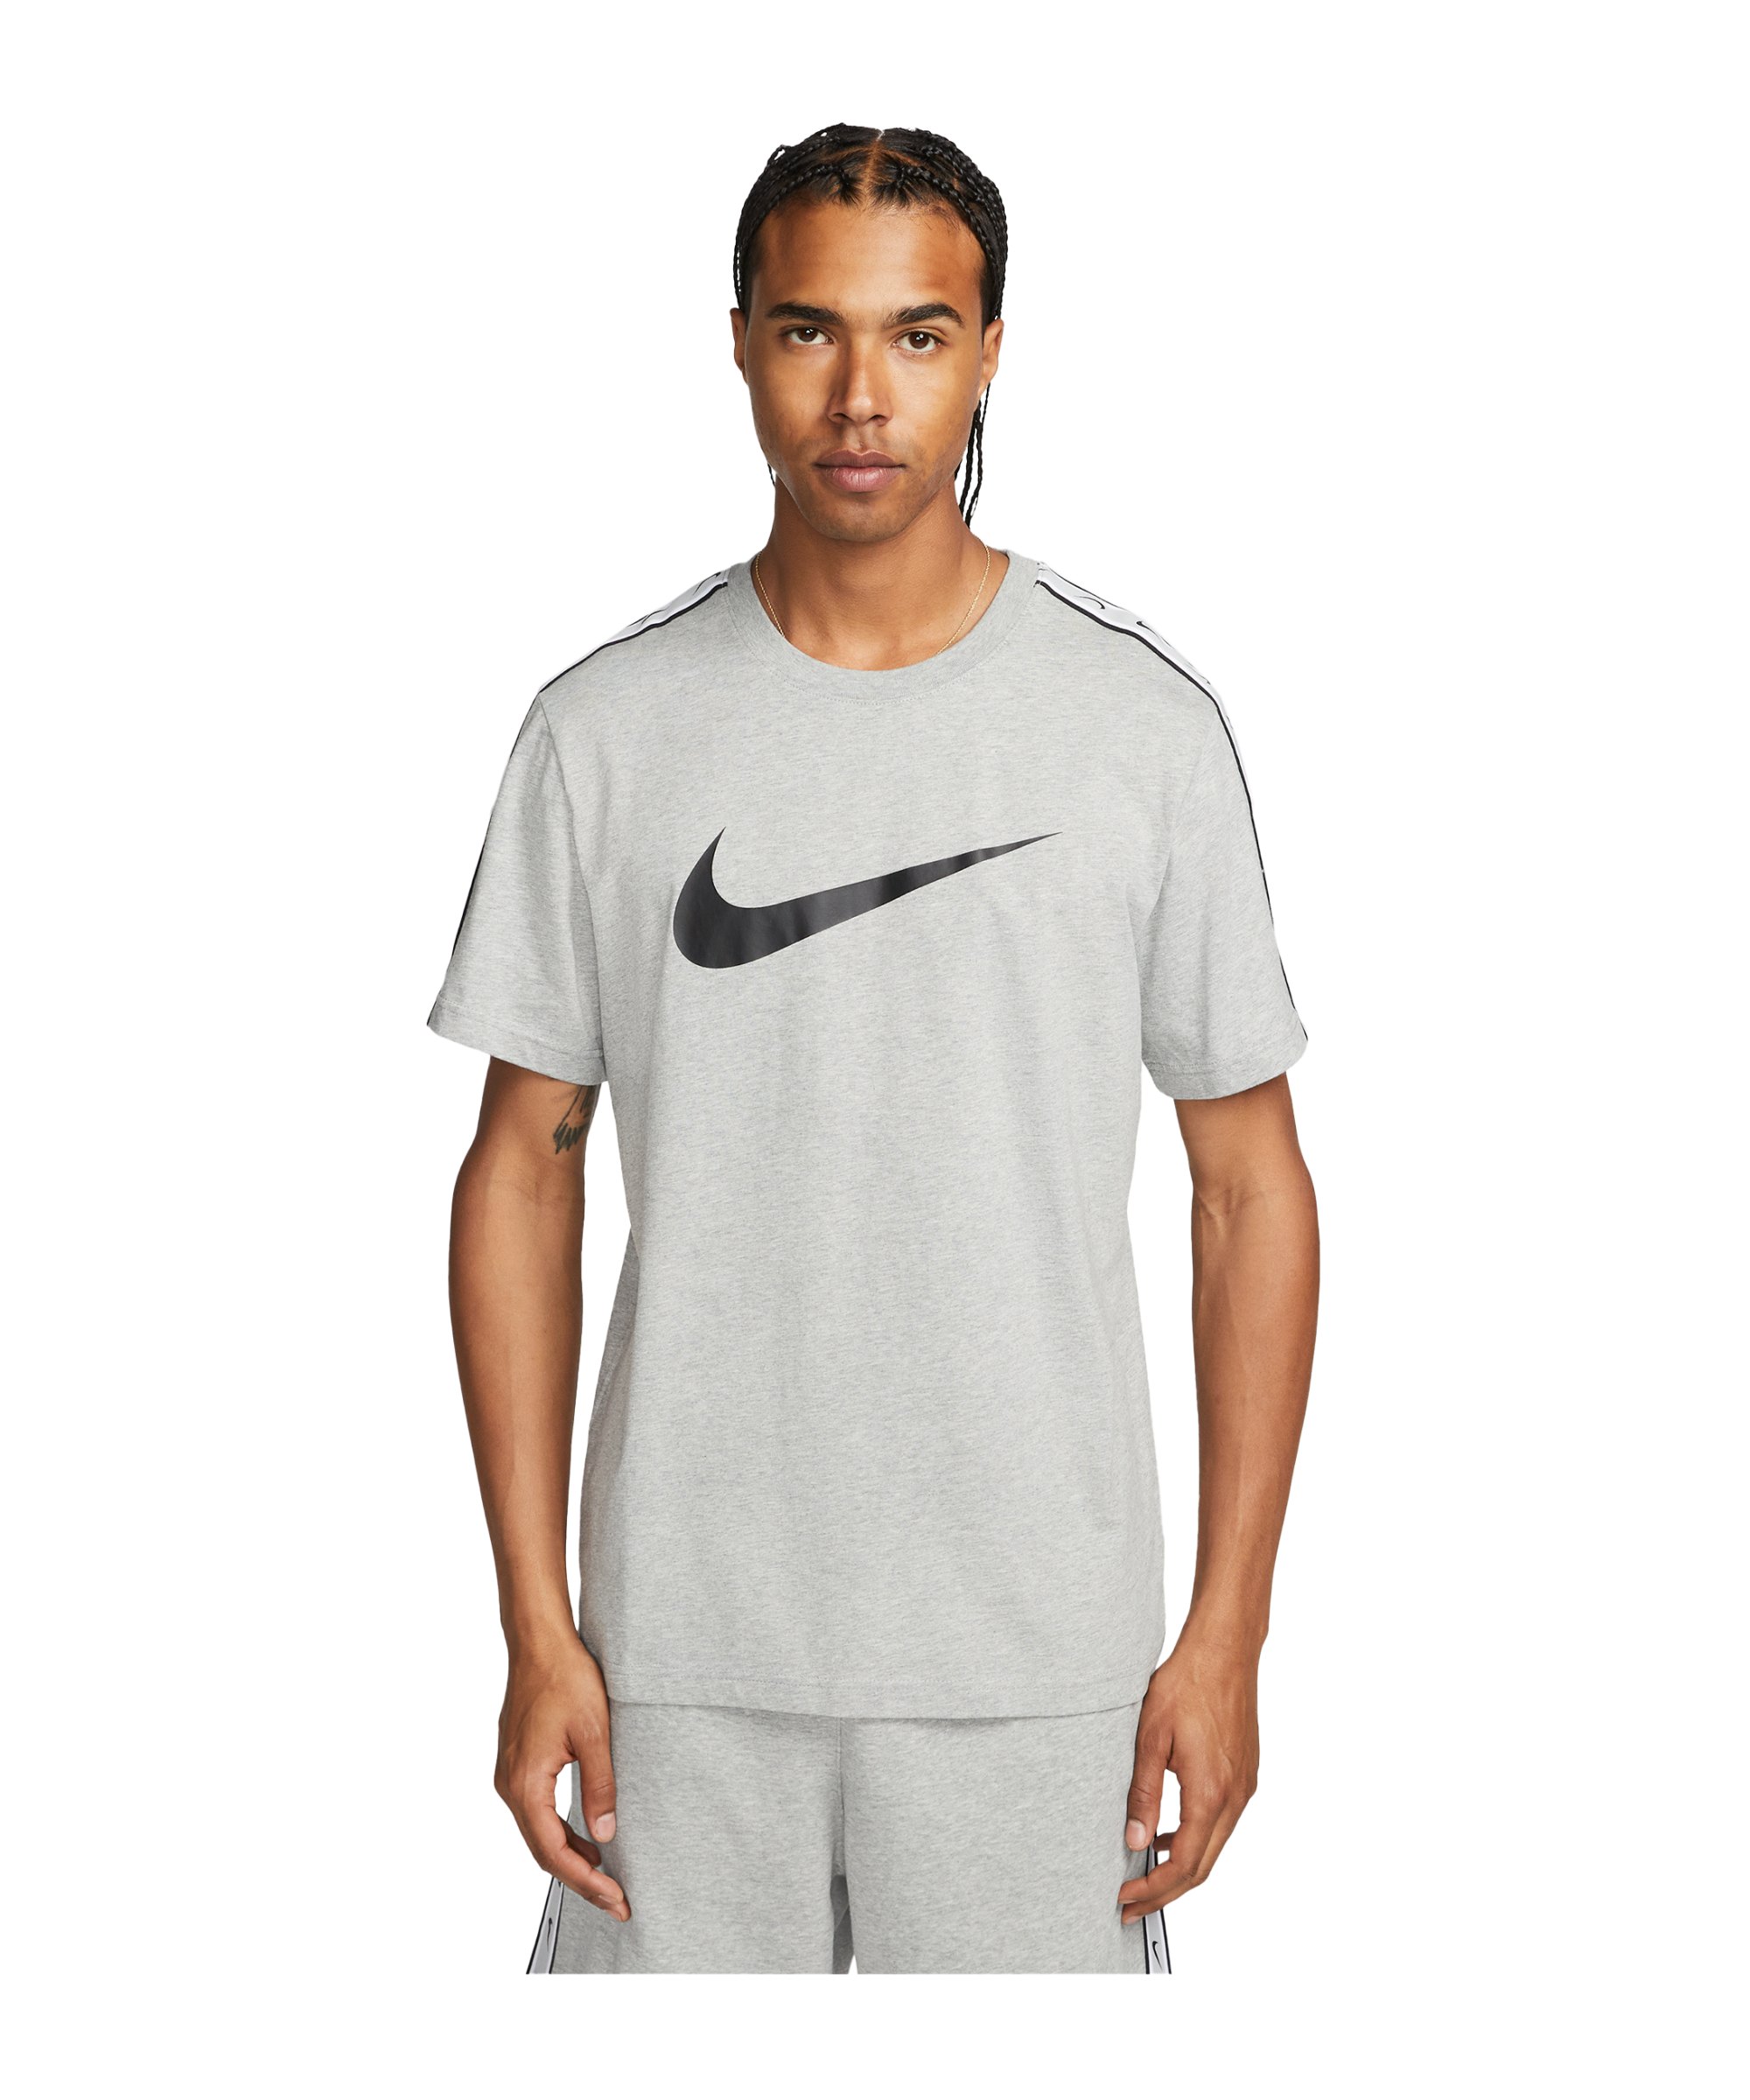 Nike Repeat T-Shirt Grau Schwarz F063 - grau